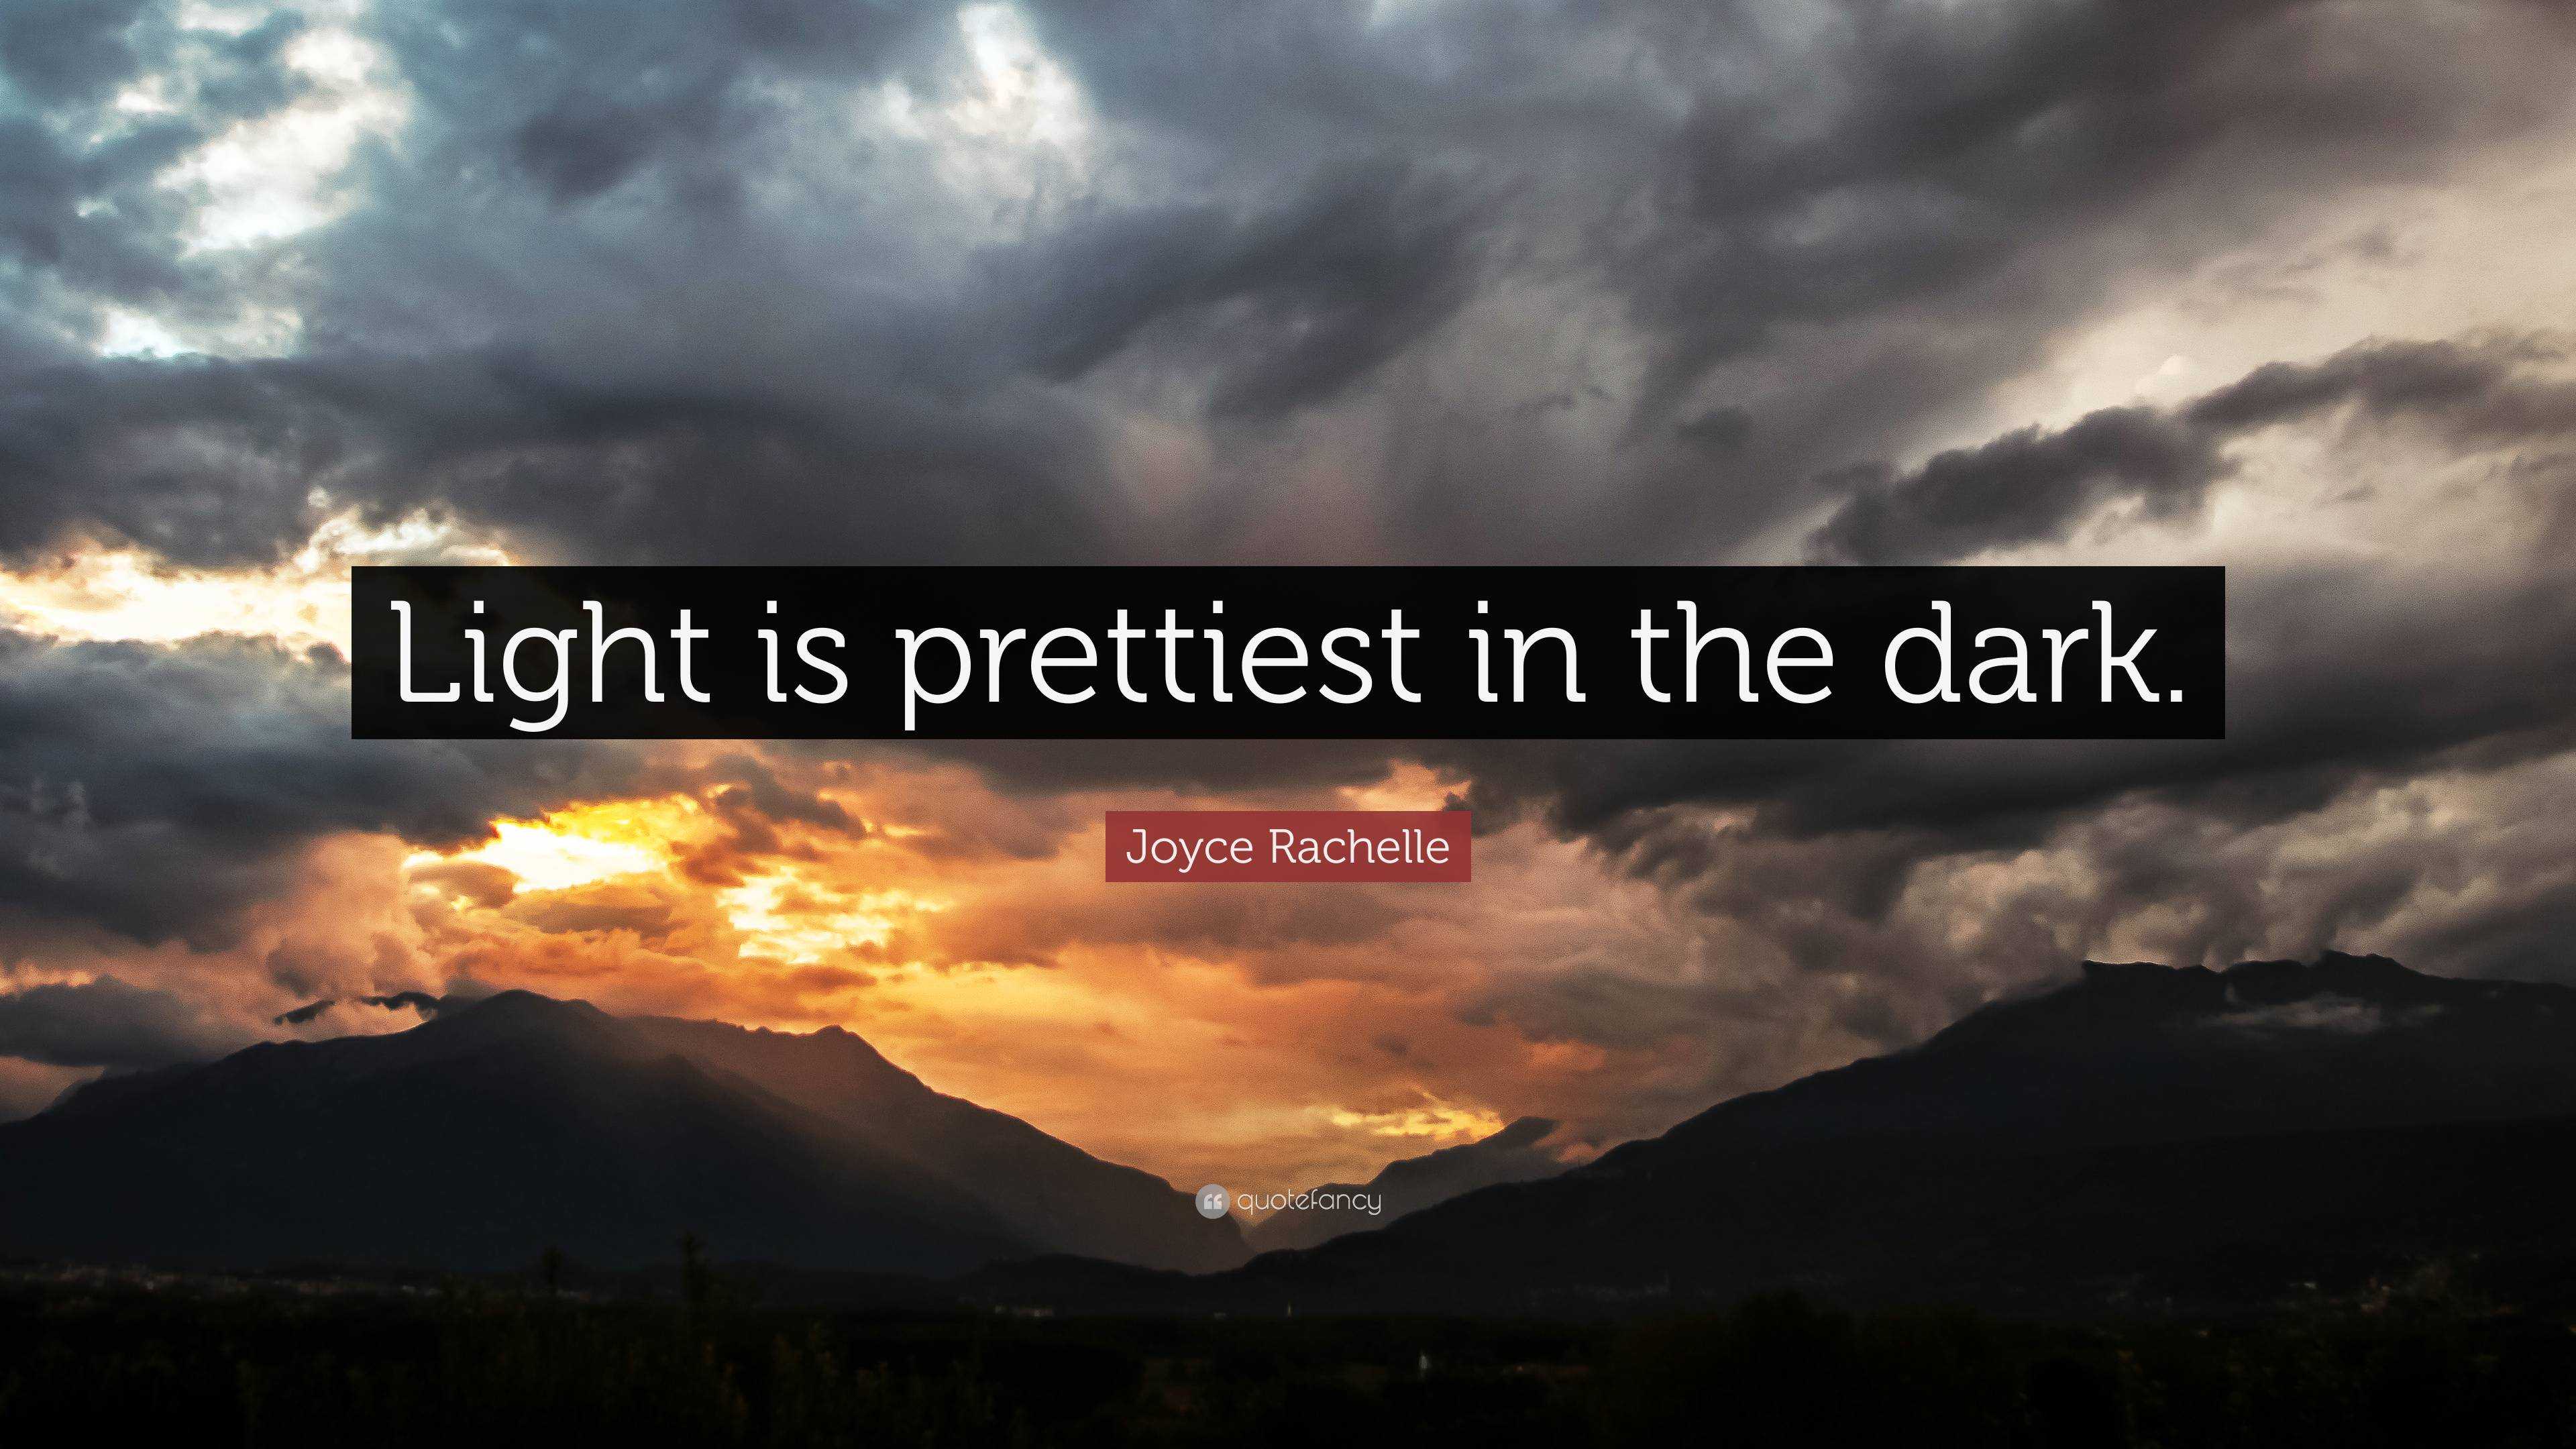 Joyce Rachelle Quote: “Light is prettiest in the dark.”